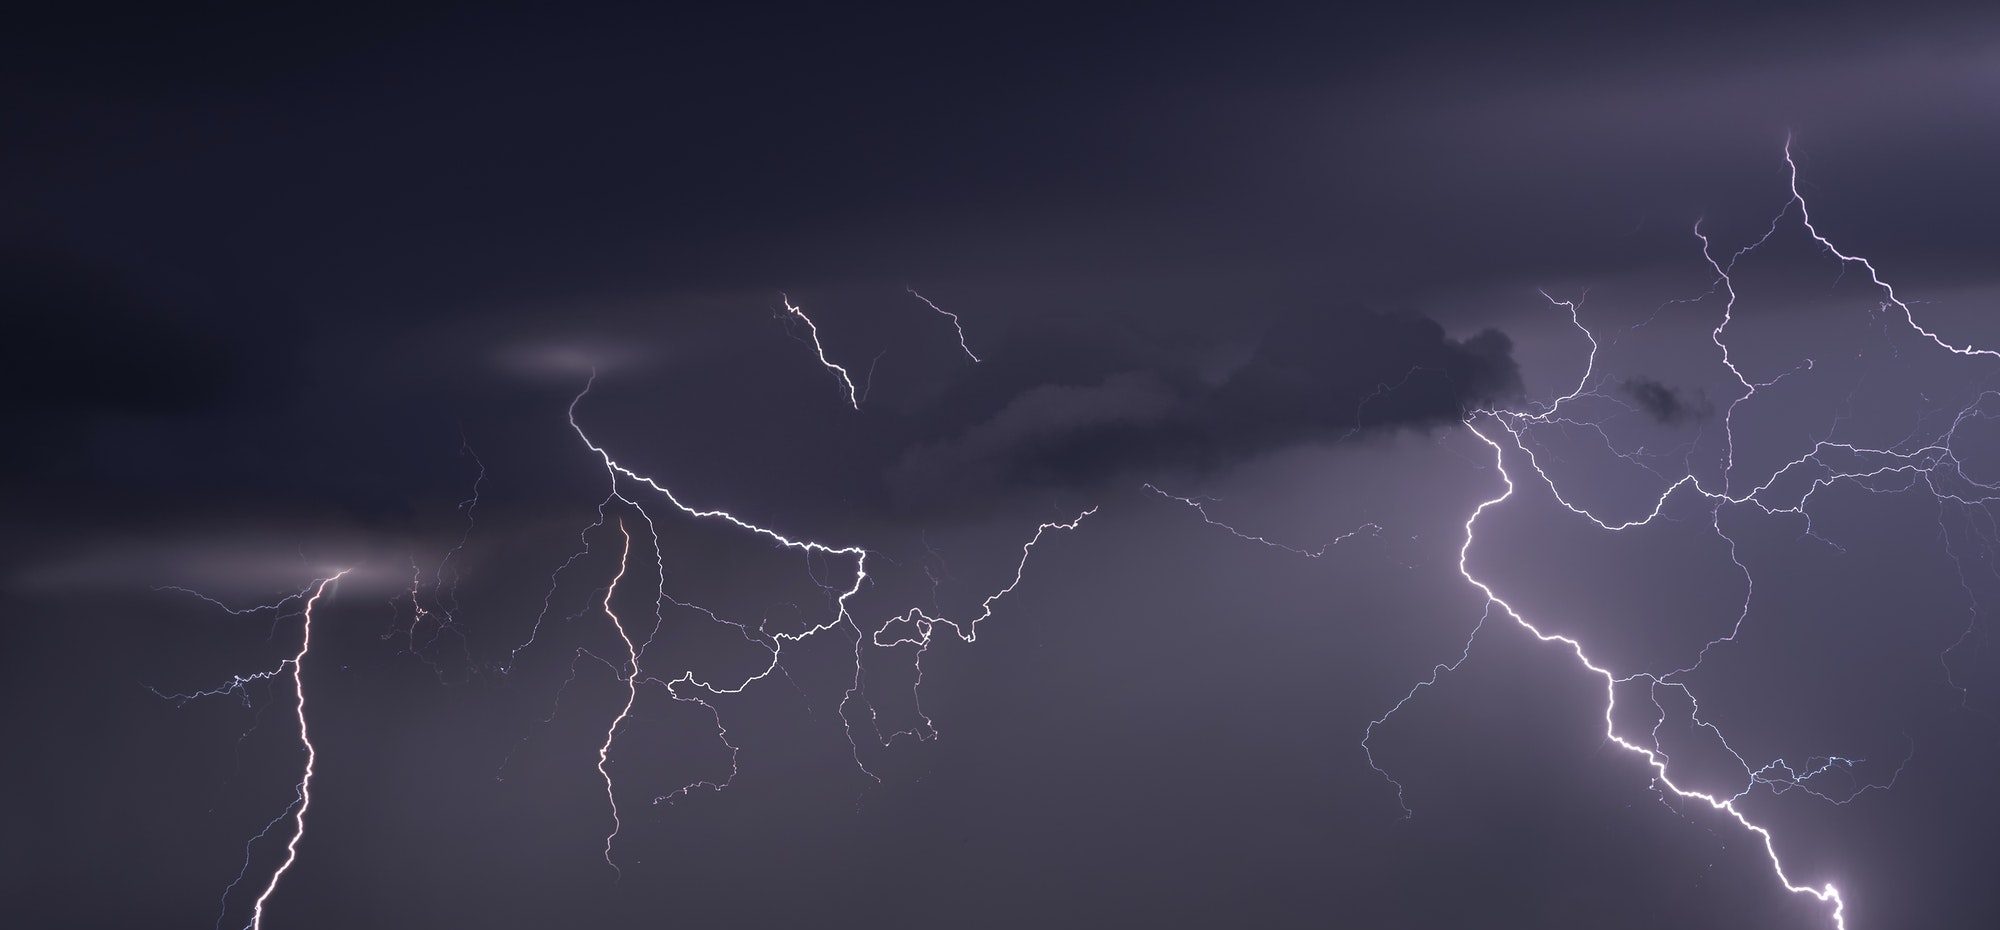 Large lightning strike at dusk on Tornado Alley